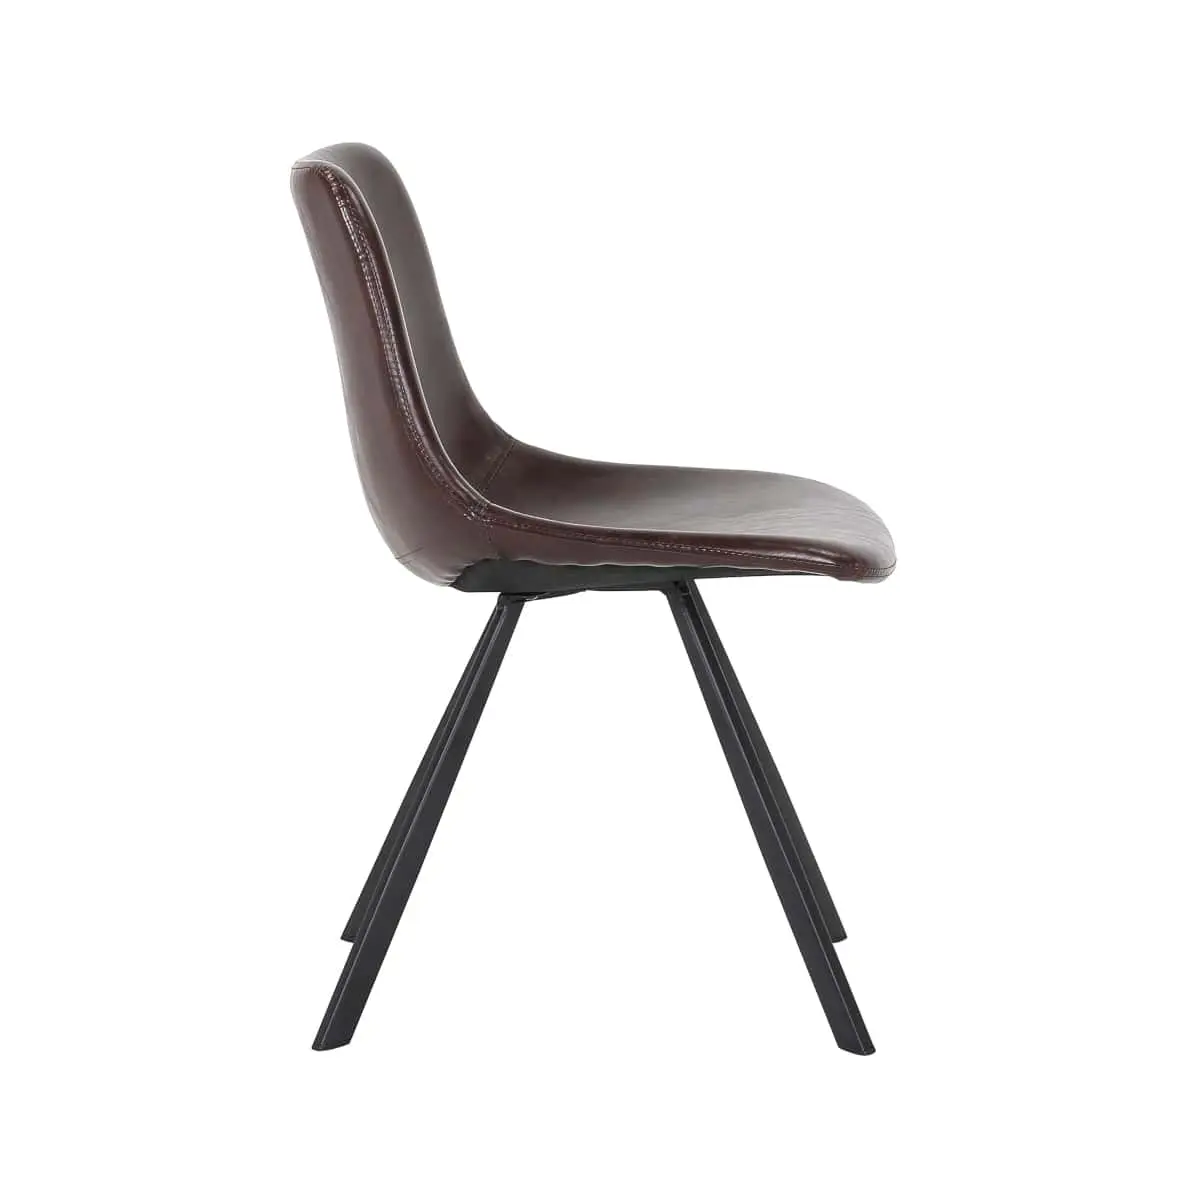 Esszimmerstuhl, Gastro-Stuhl für Cafes, Tagesbars, Restaurant, braun gepolstert, bequem, robustes schwarzes Metallgestell